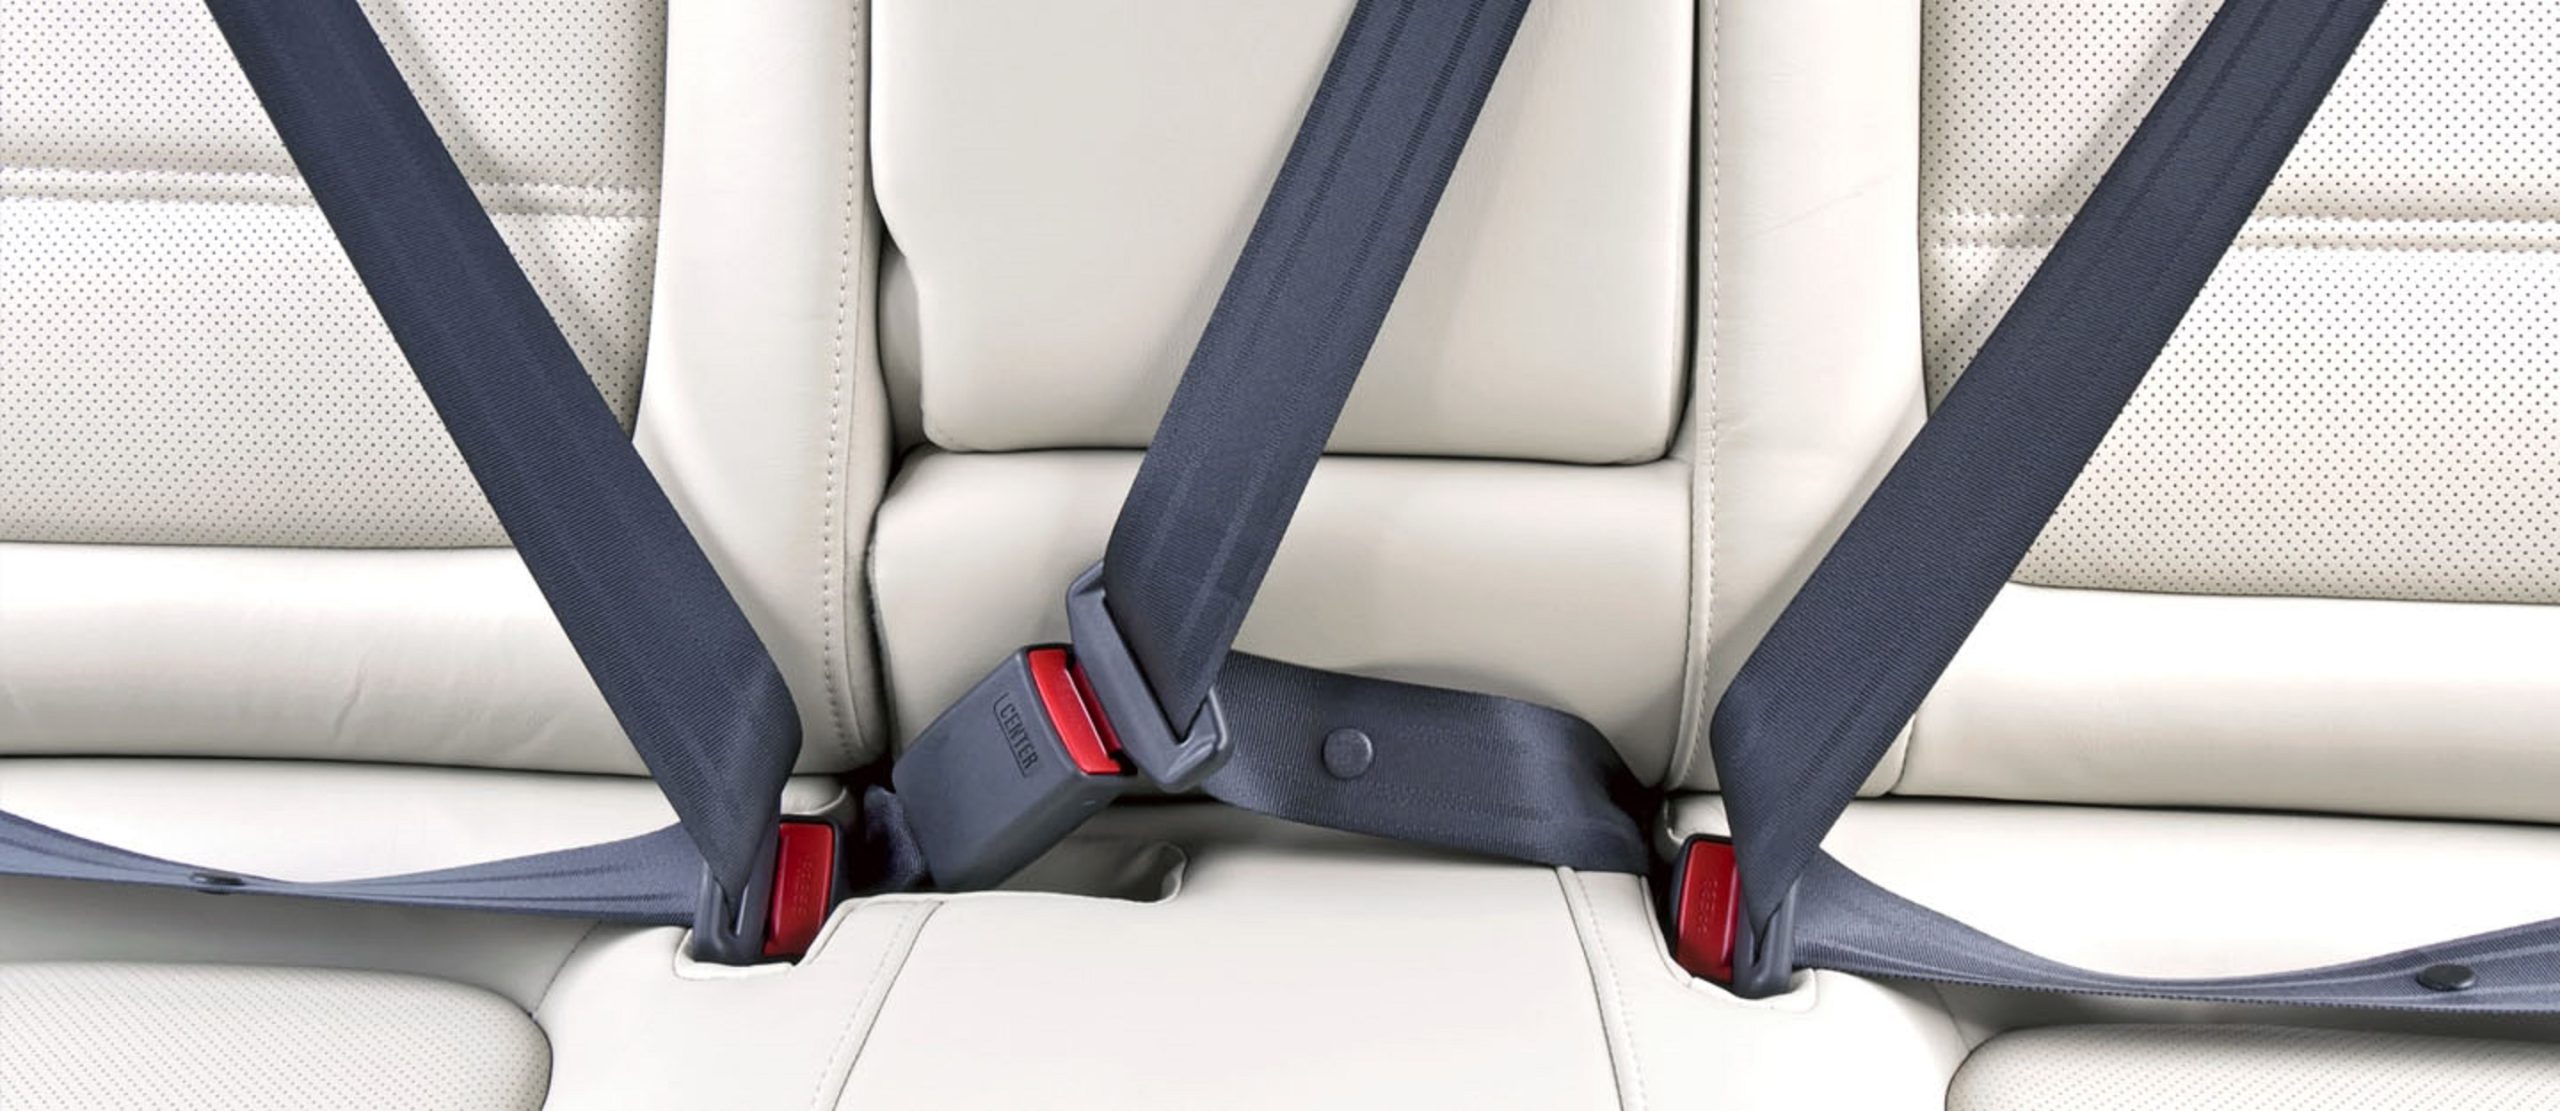 Ремень безопасности длина. Seat Belt. Ремни безопасности системы Belt-in-Seat (bis). Car Safety Seat Belt. Ремень безопасности трехточечный ЛИАЗ.